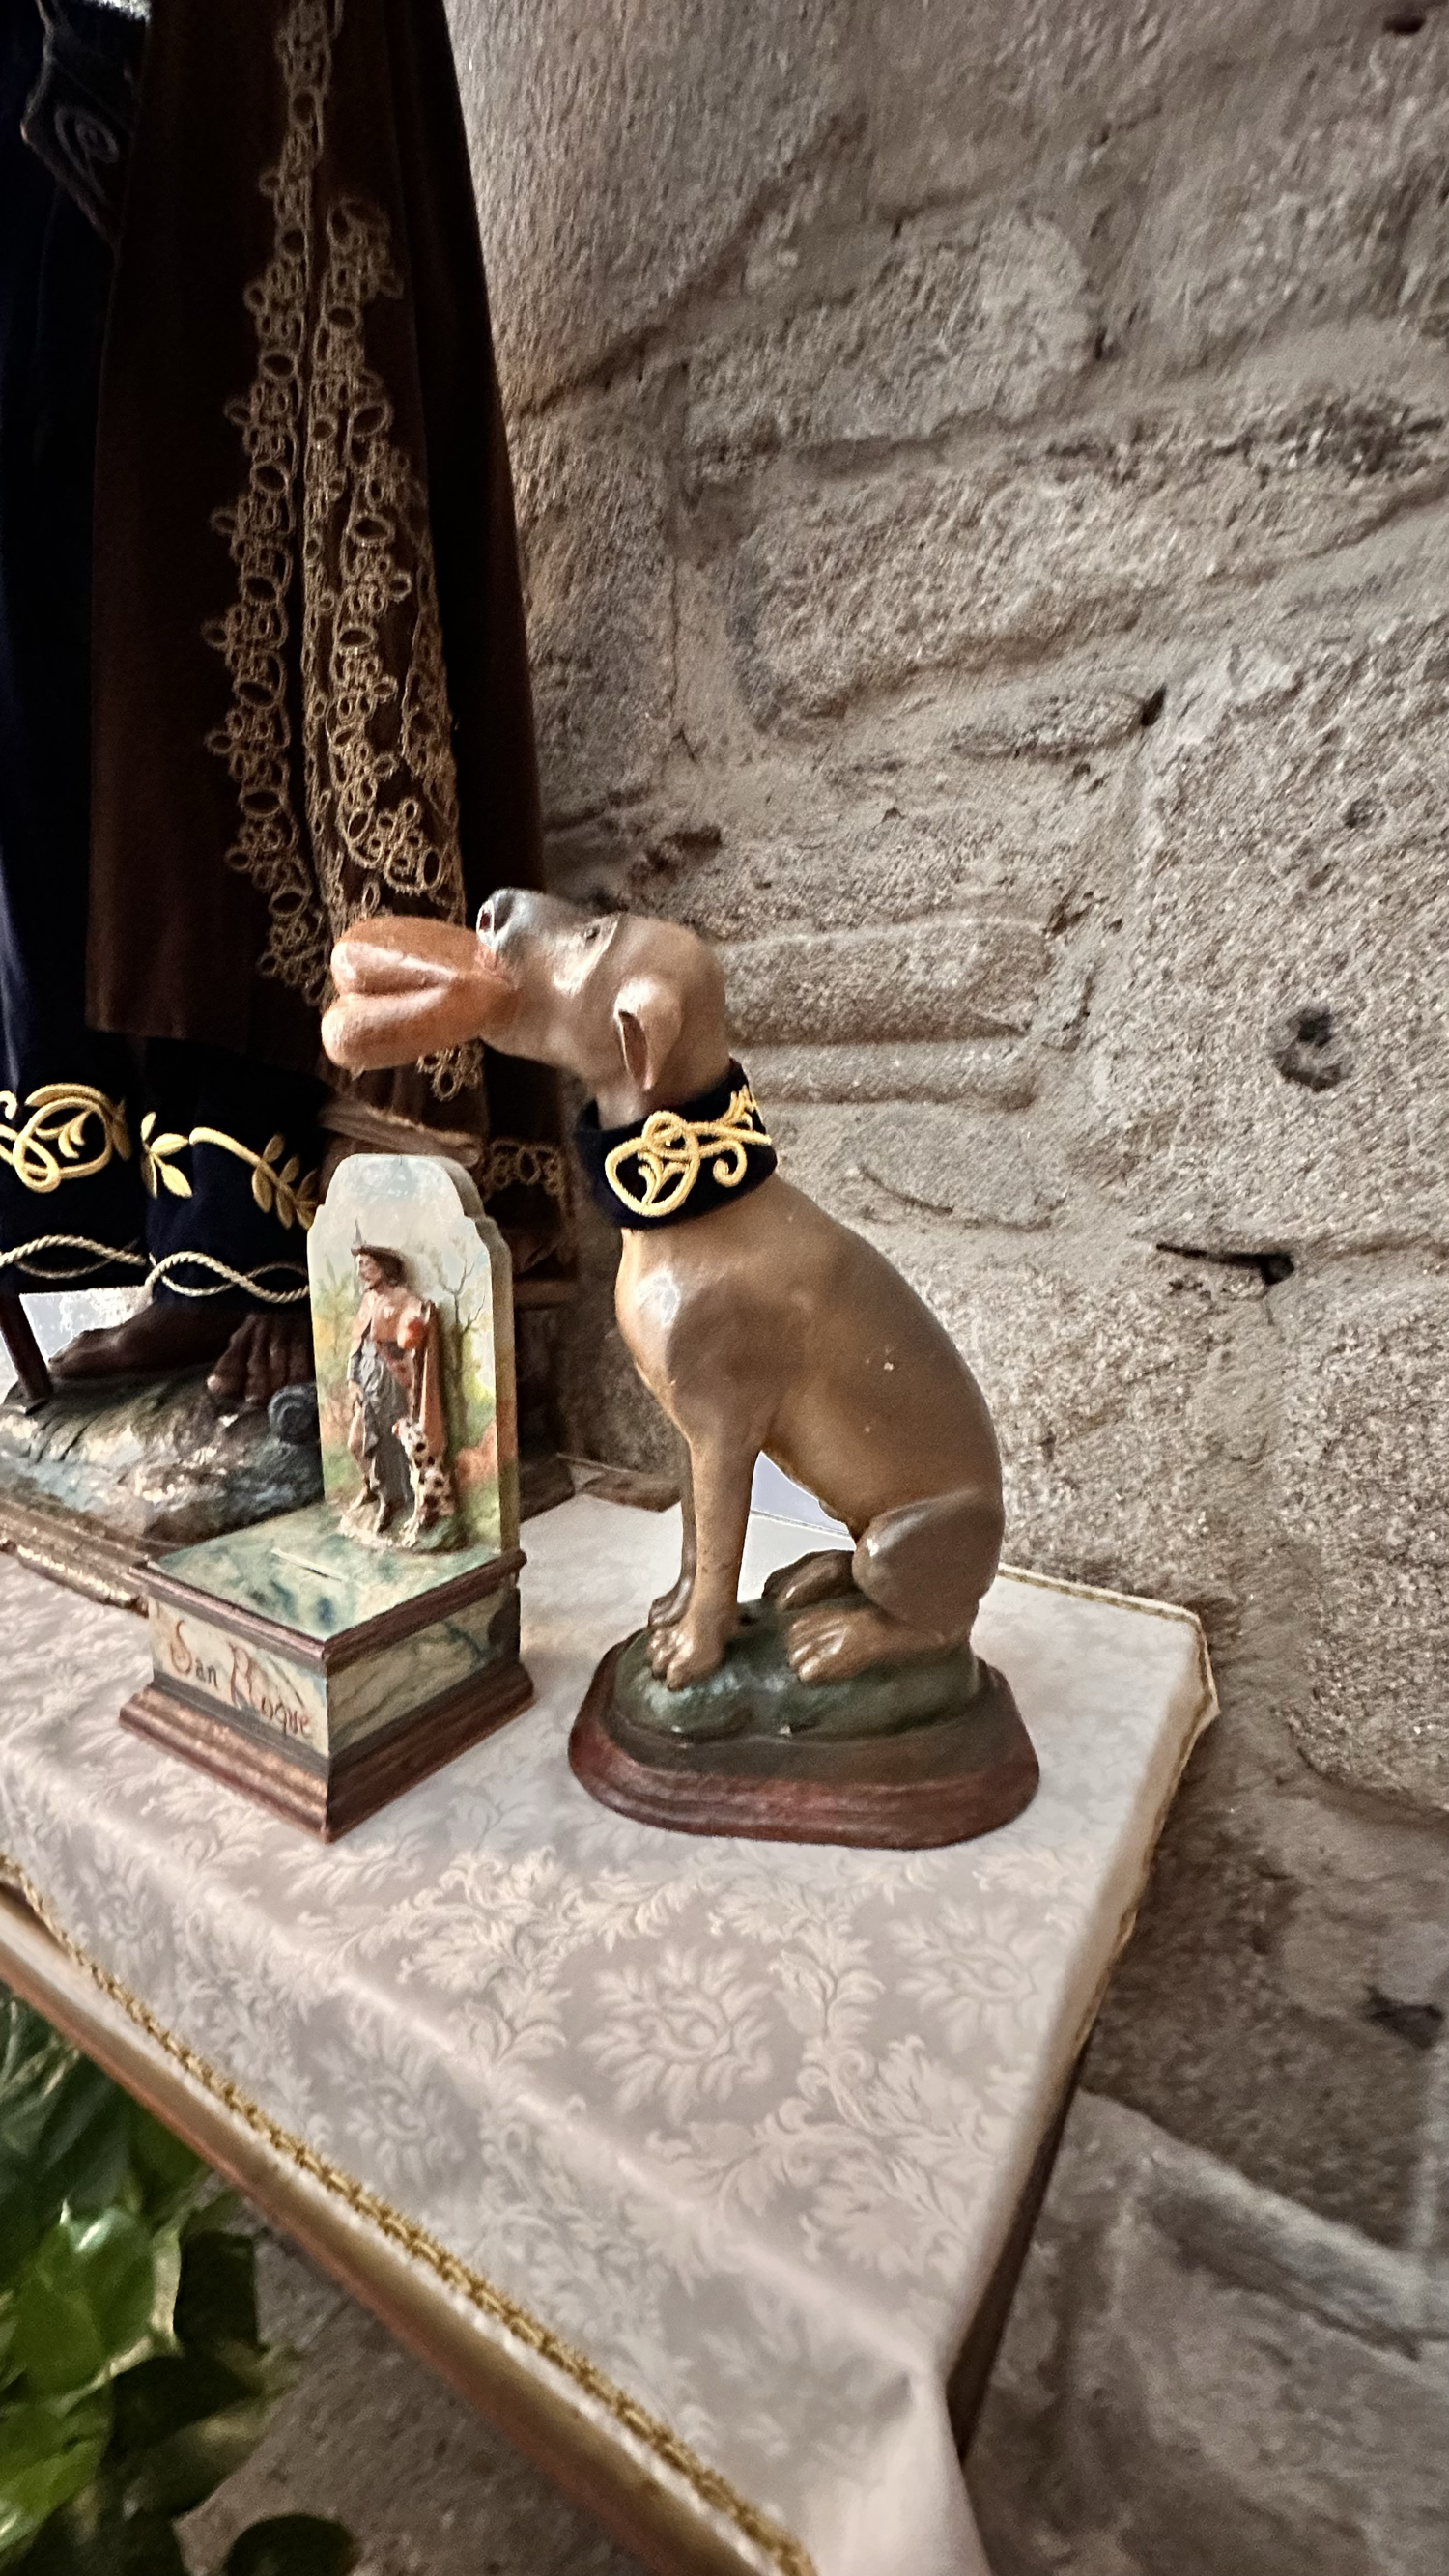 来这里看看圣罗克的狗是有尾巴的，Pontevedra圣·罗克